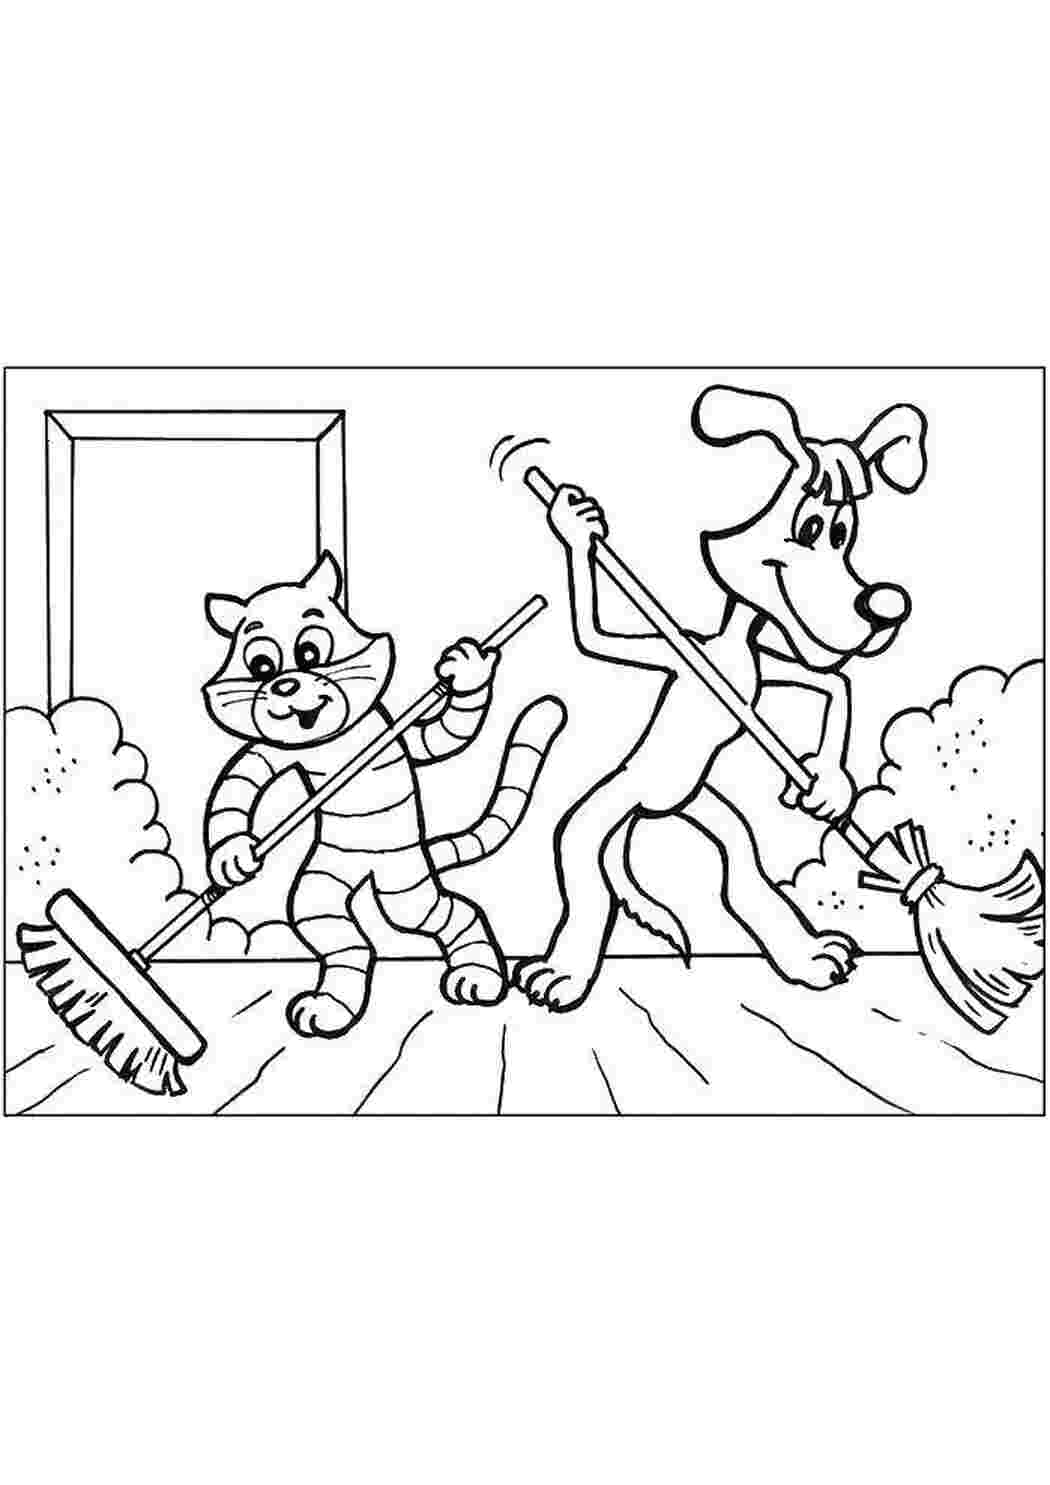 Раскраски Кот матроскин , пес шарик подметают дом раскраски простоквашино кот Матроскин , пес Шарик и дядя Федор